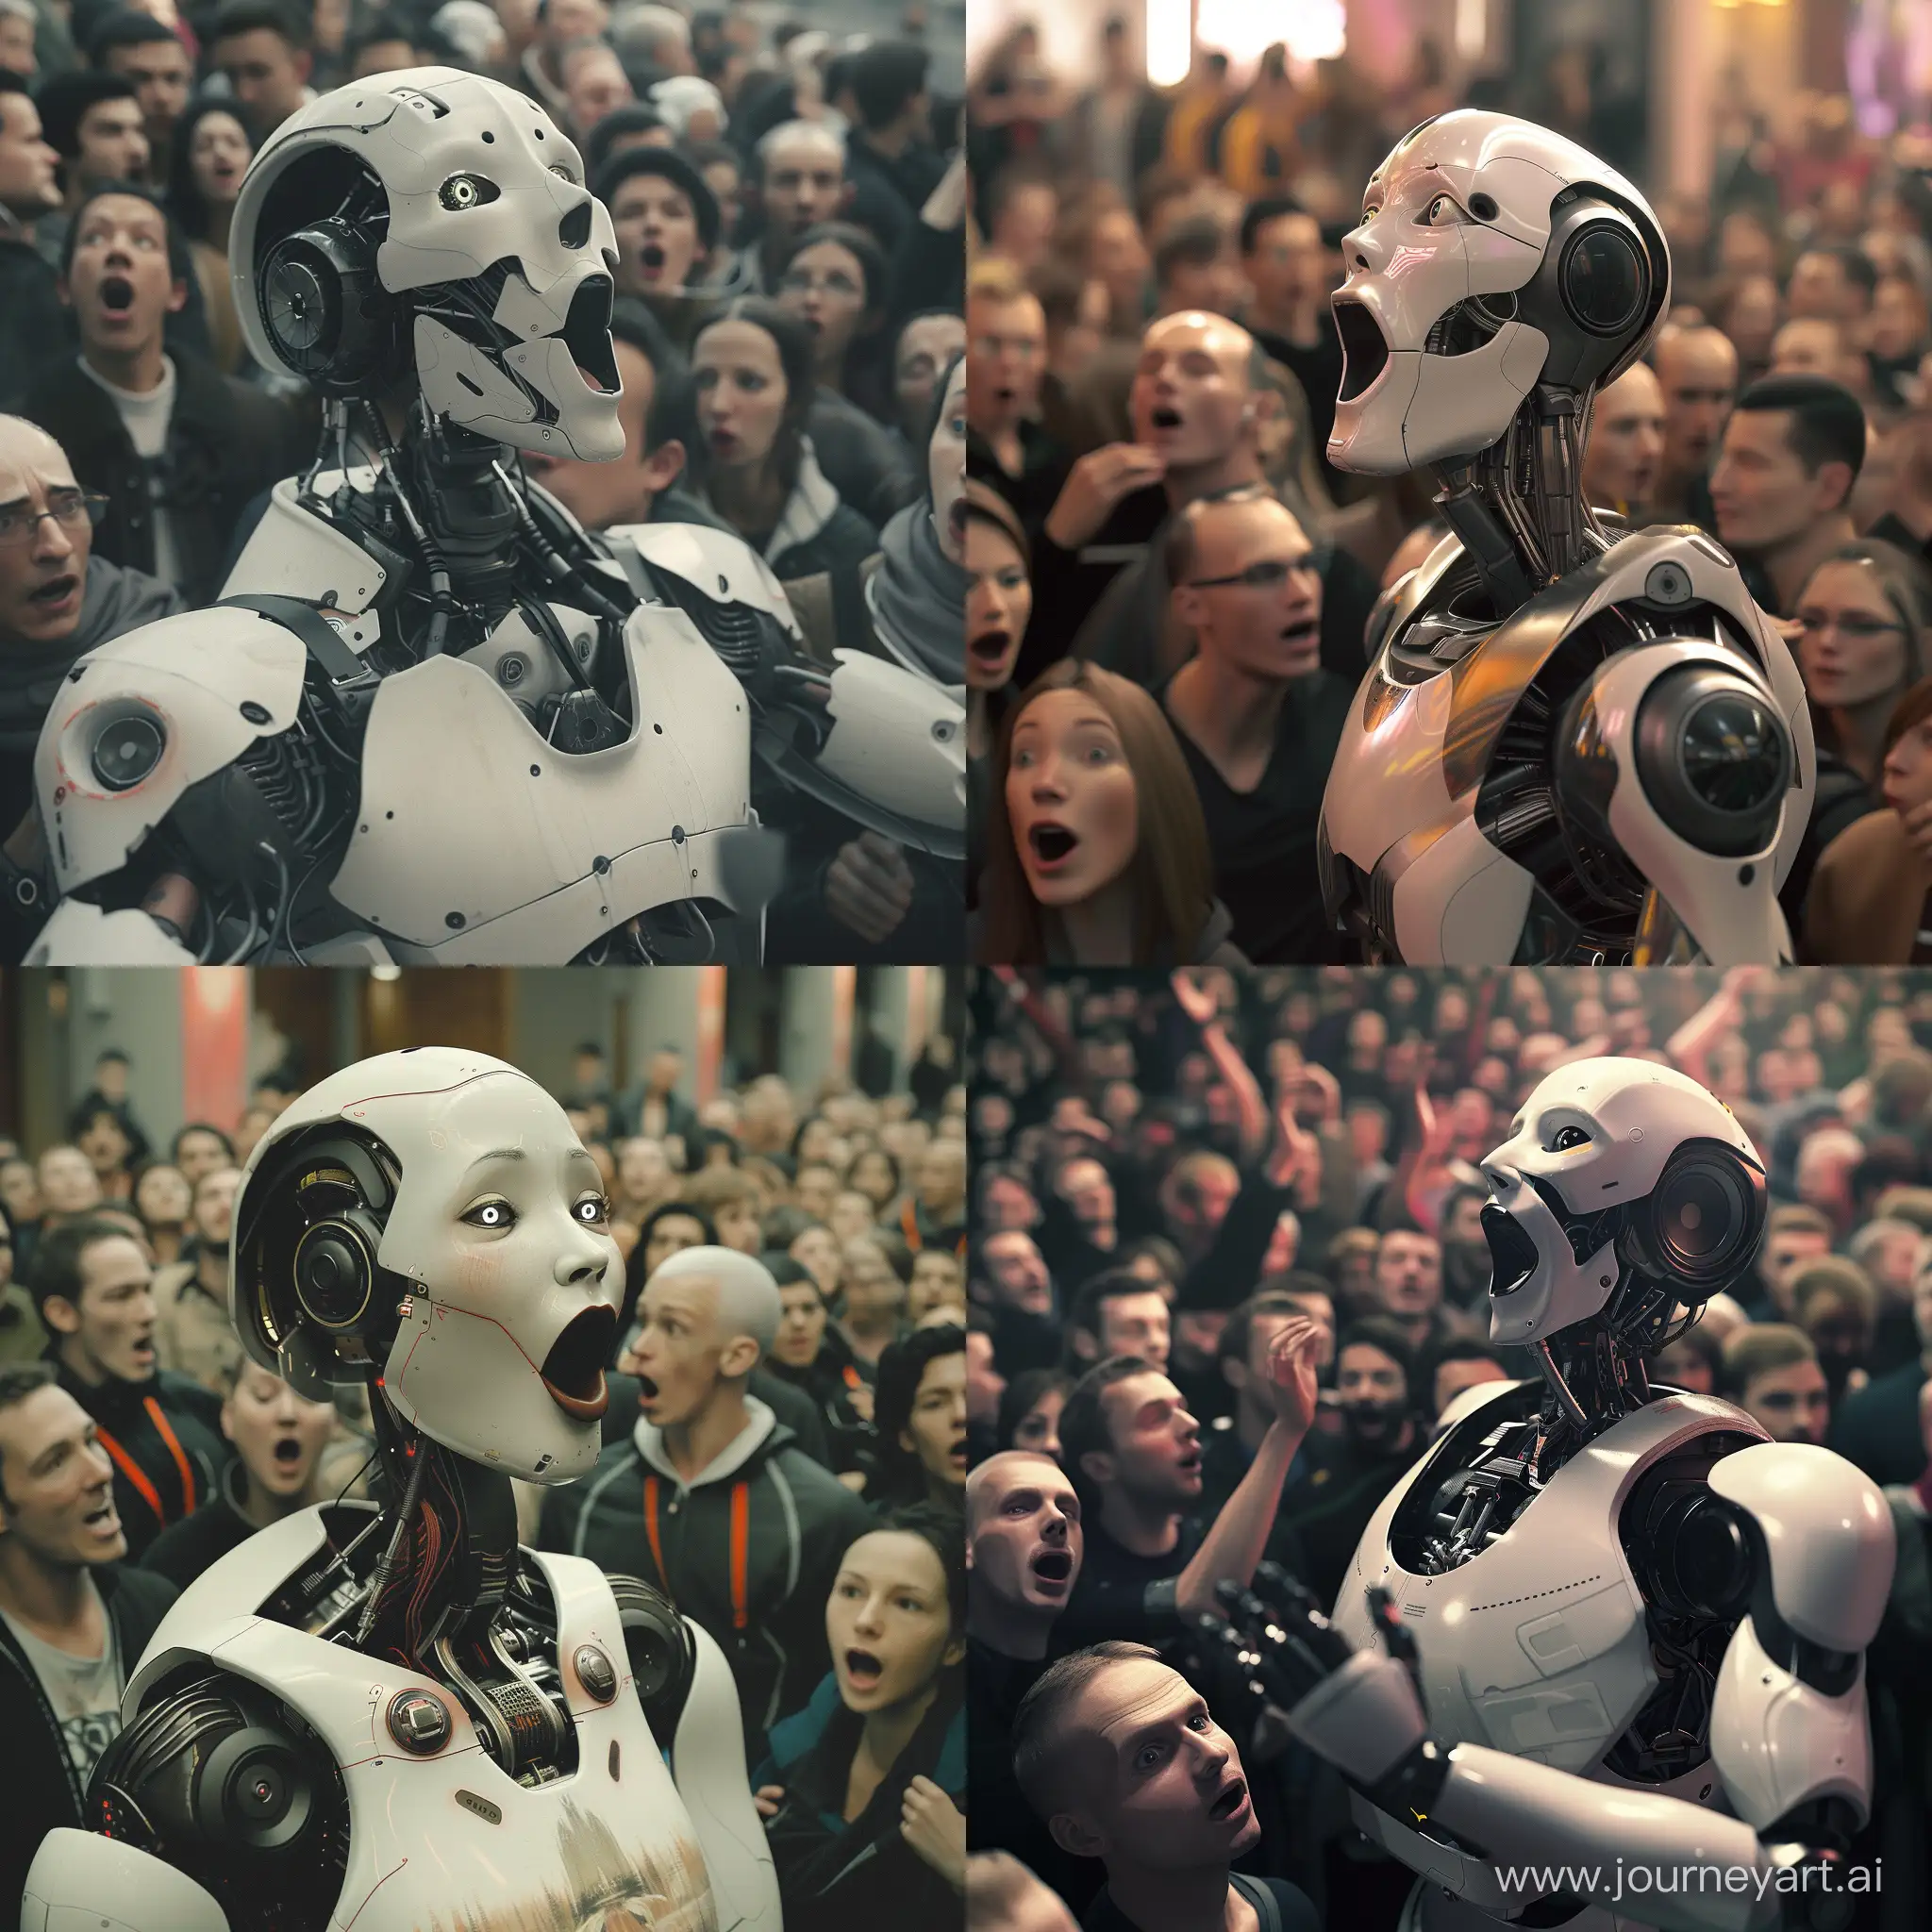 Сладкоголосый робот-обманщик рассказывает красивые лживые истории толпе людей, а люди слушают эти истории зачарованно, с удивлёнными глазами и раскрытыми ртами, фотография, сверхтехнологичное будущее, высокое разрешение